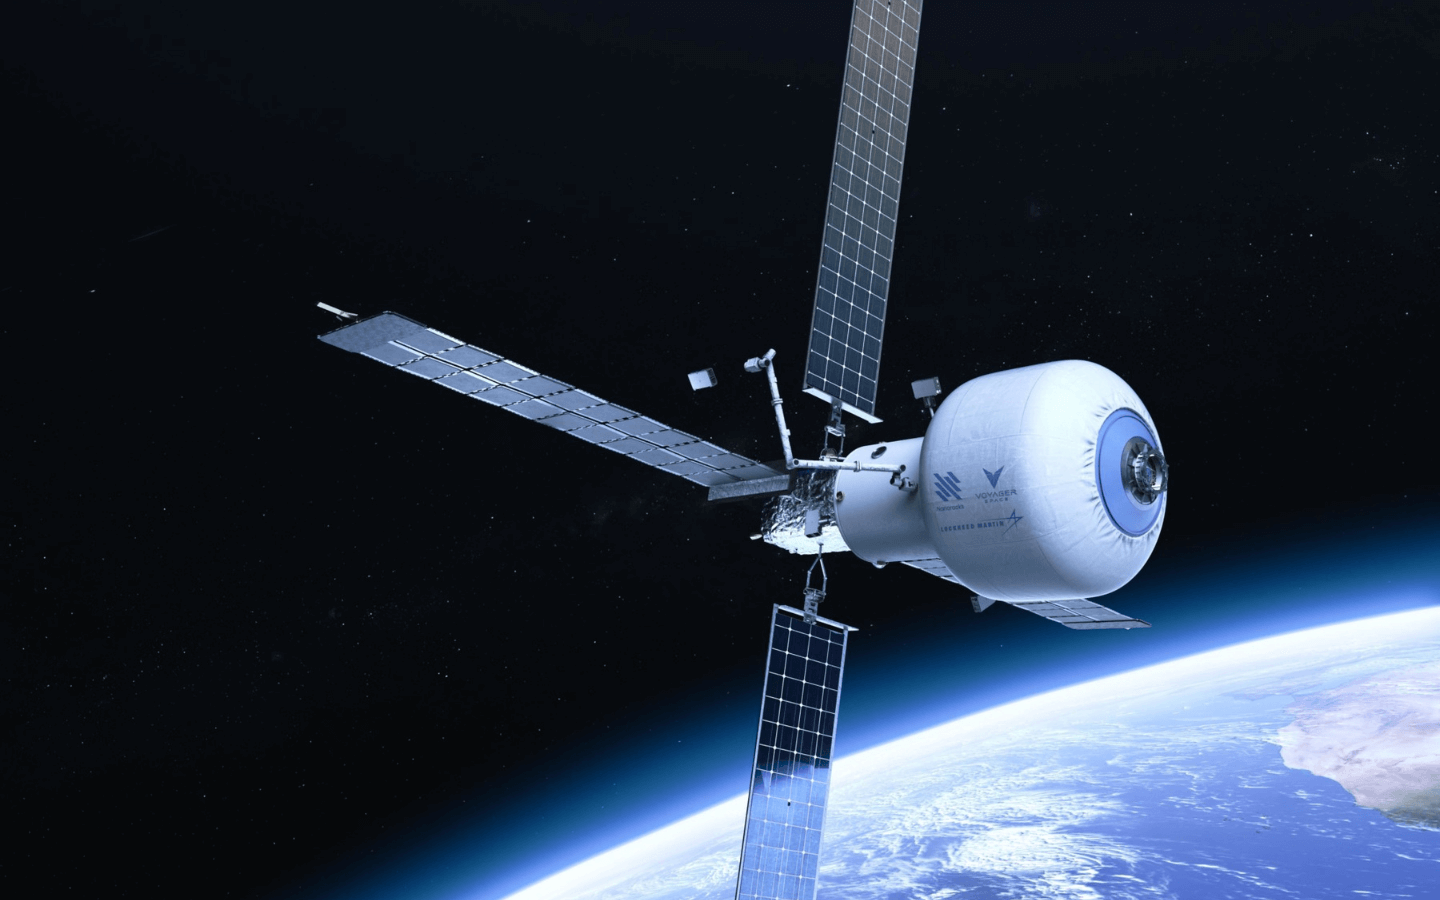 Starlab, תחנת החלל המתוכננת LEO (Low Earth Orbit) שתוכננה על ידי Nanoracks לפעילויות חלל מסחריות.